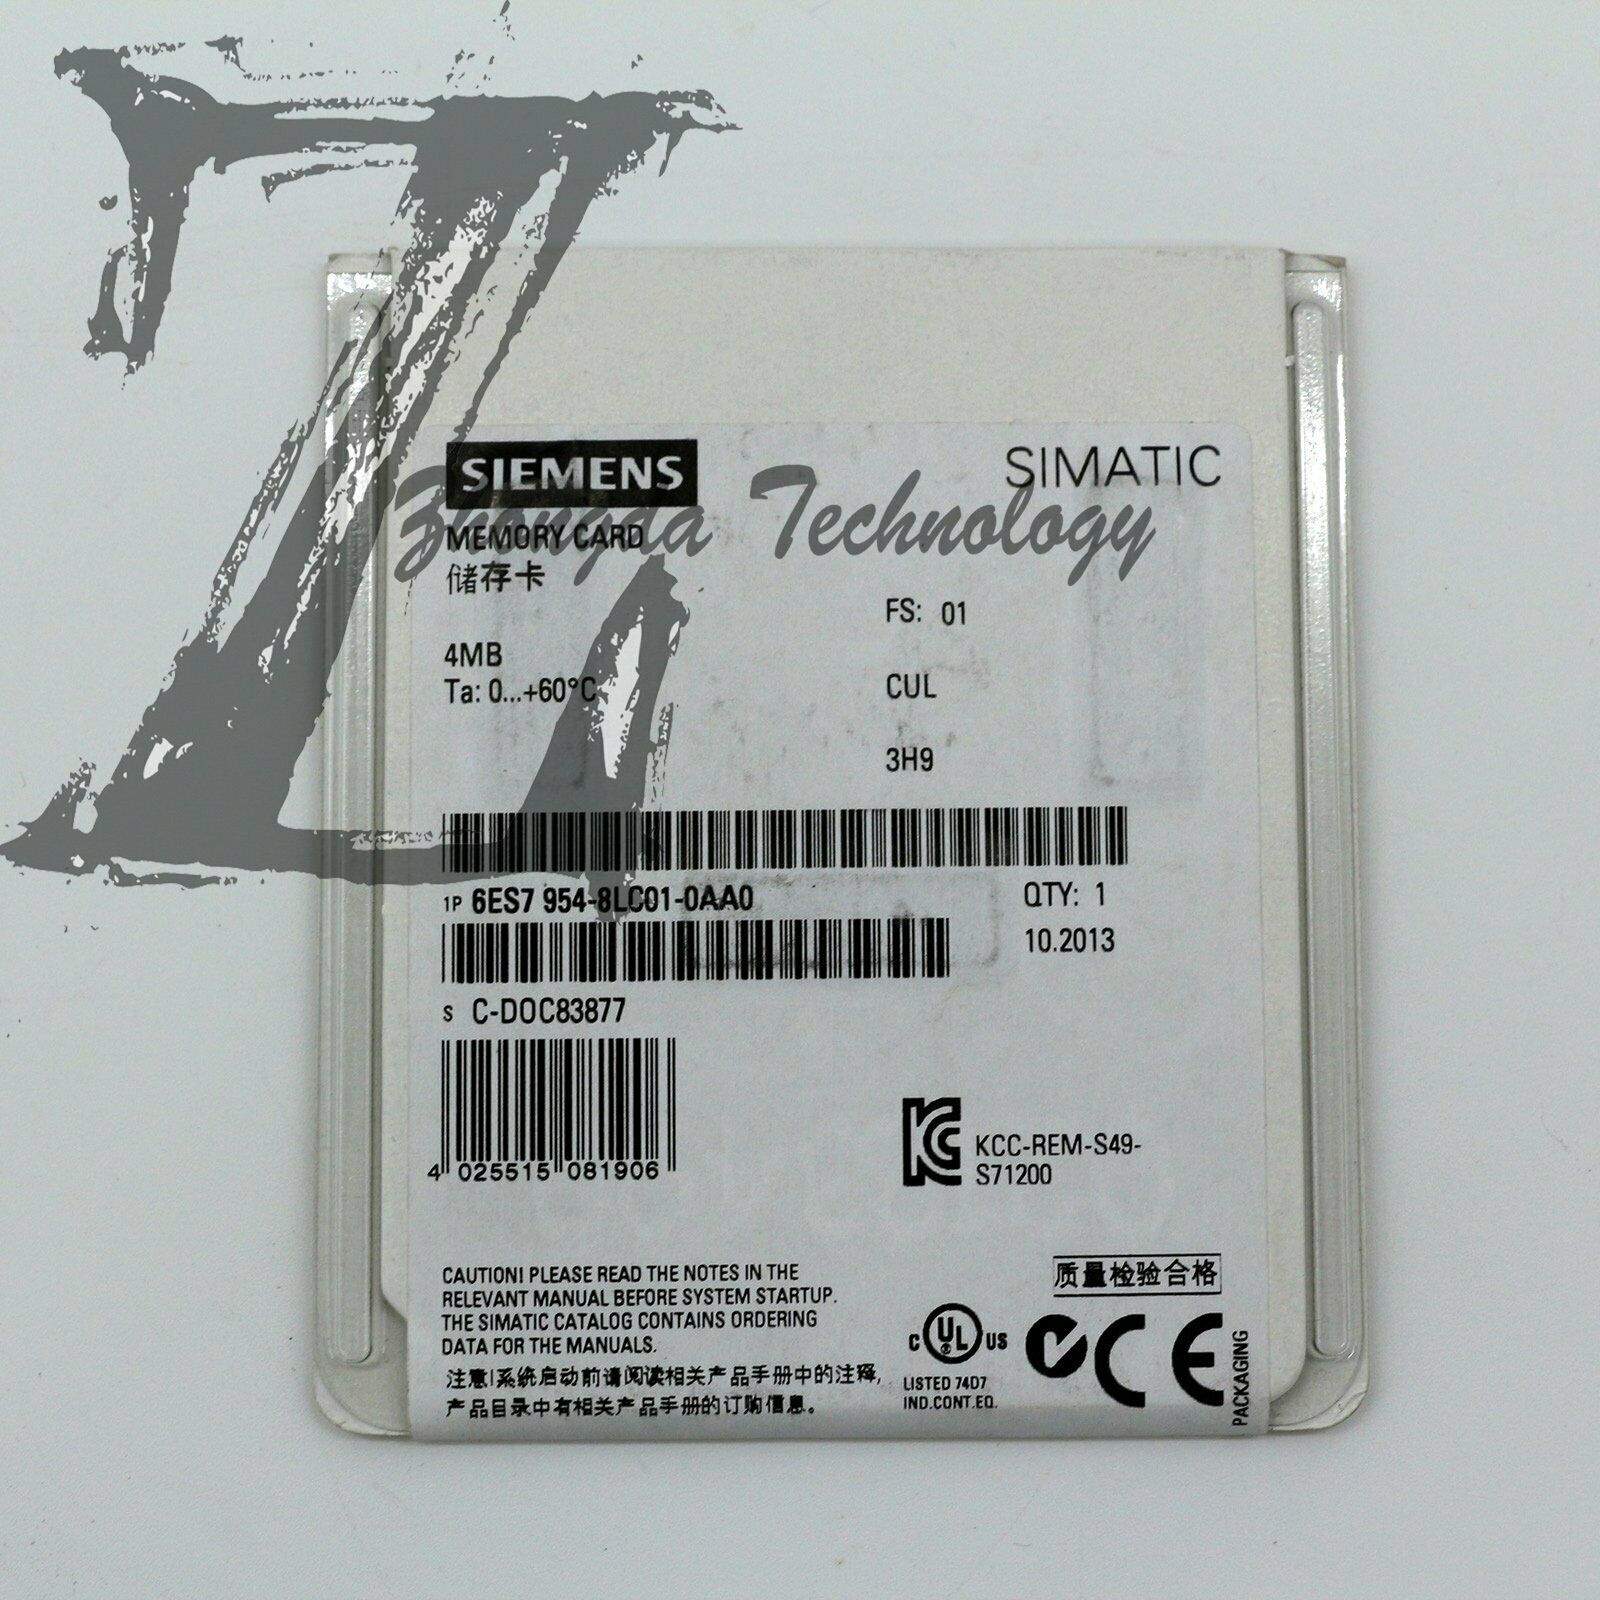 NEW SIEMENS MMC memory card 6ES7954-8LC01-0AA0